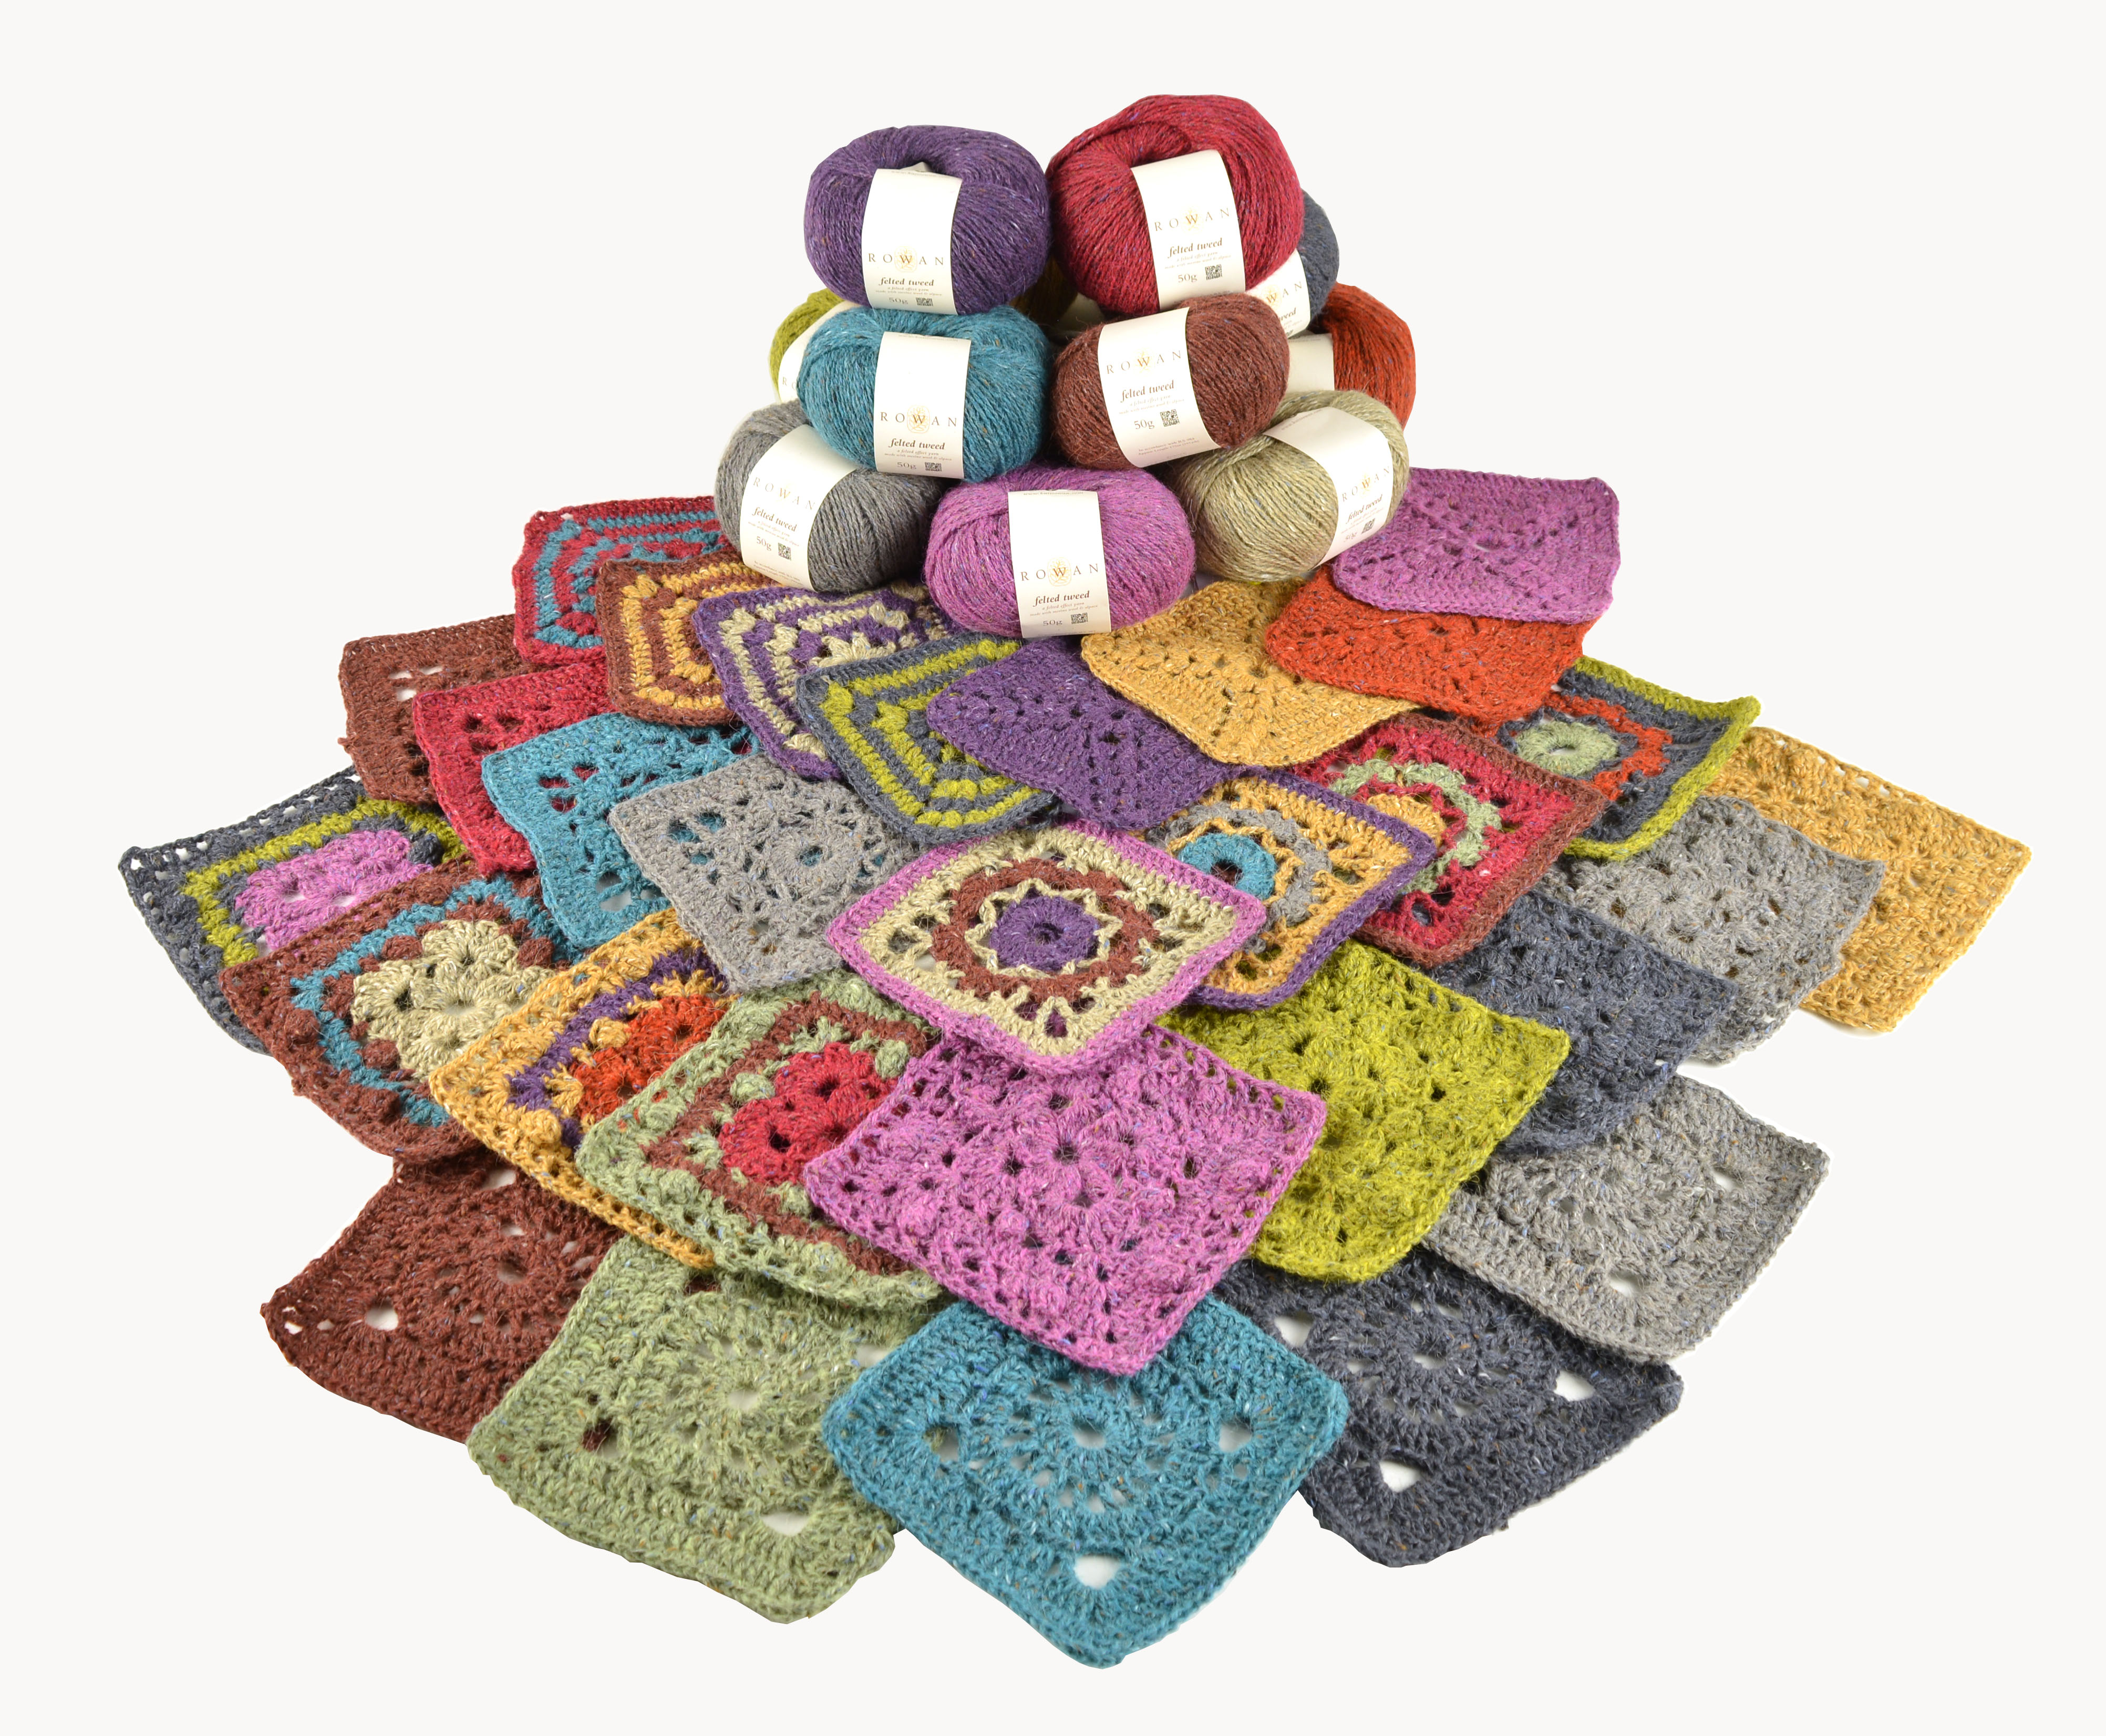 Knitrowan Com Free Knitting Patterns Lisa Richardson Crochet Along 2017 Week 9 Smd Knitting